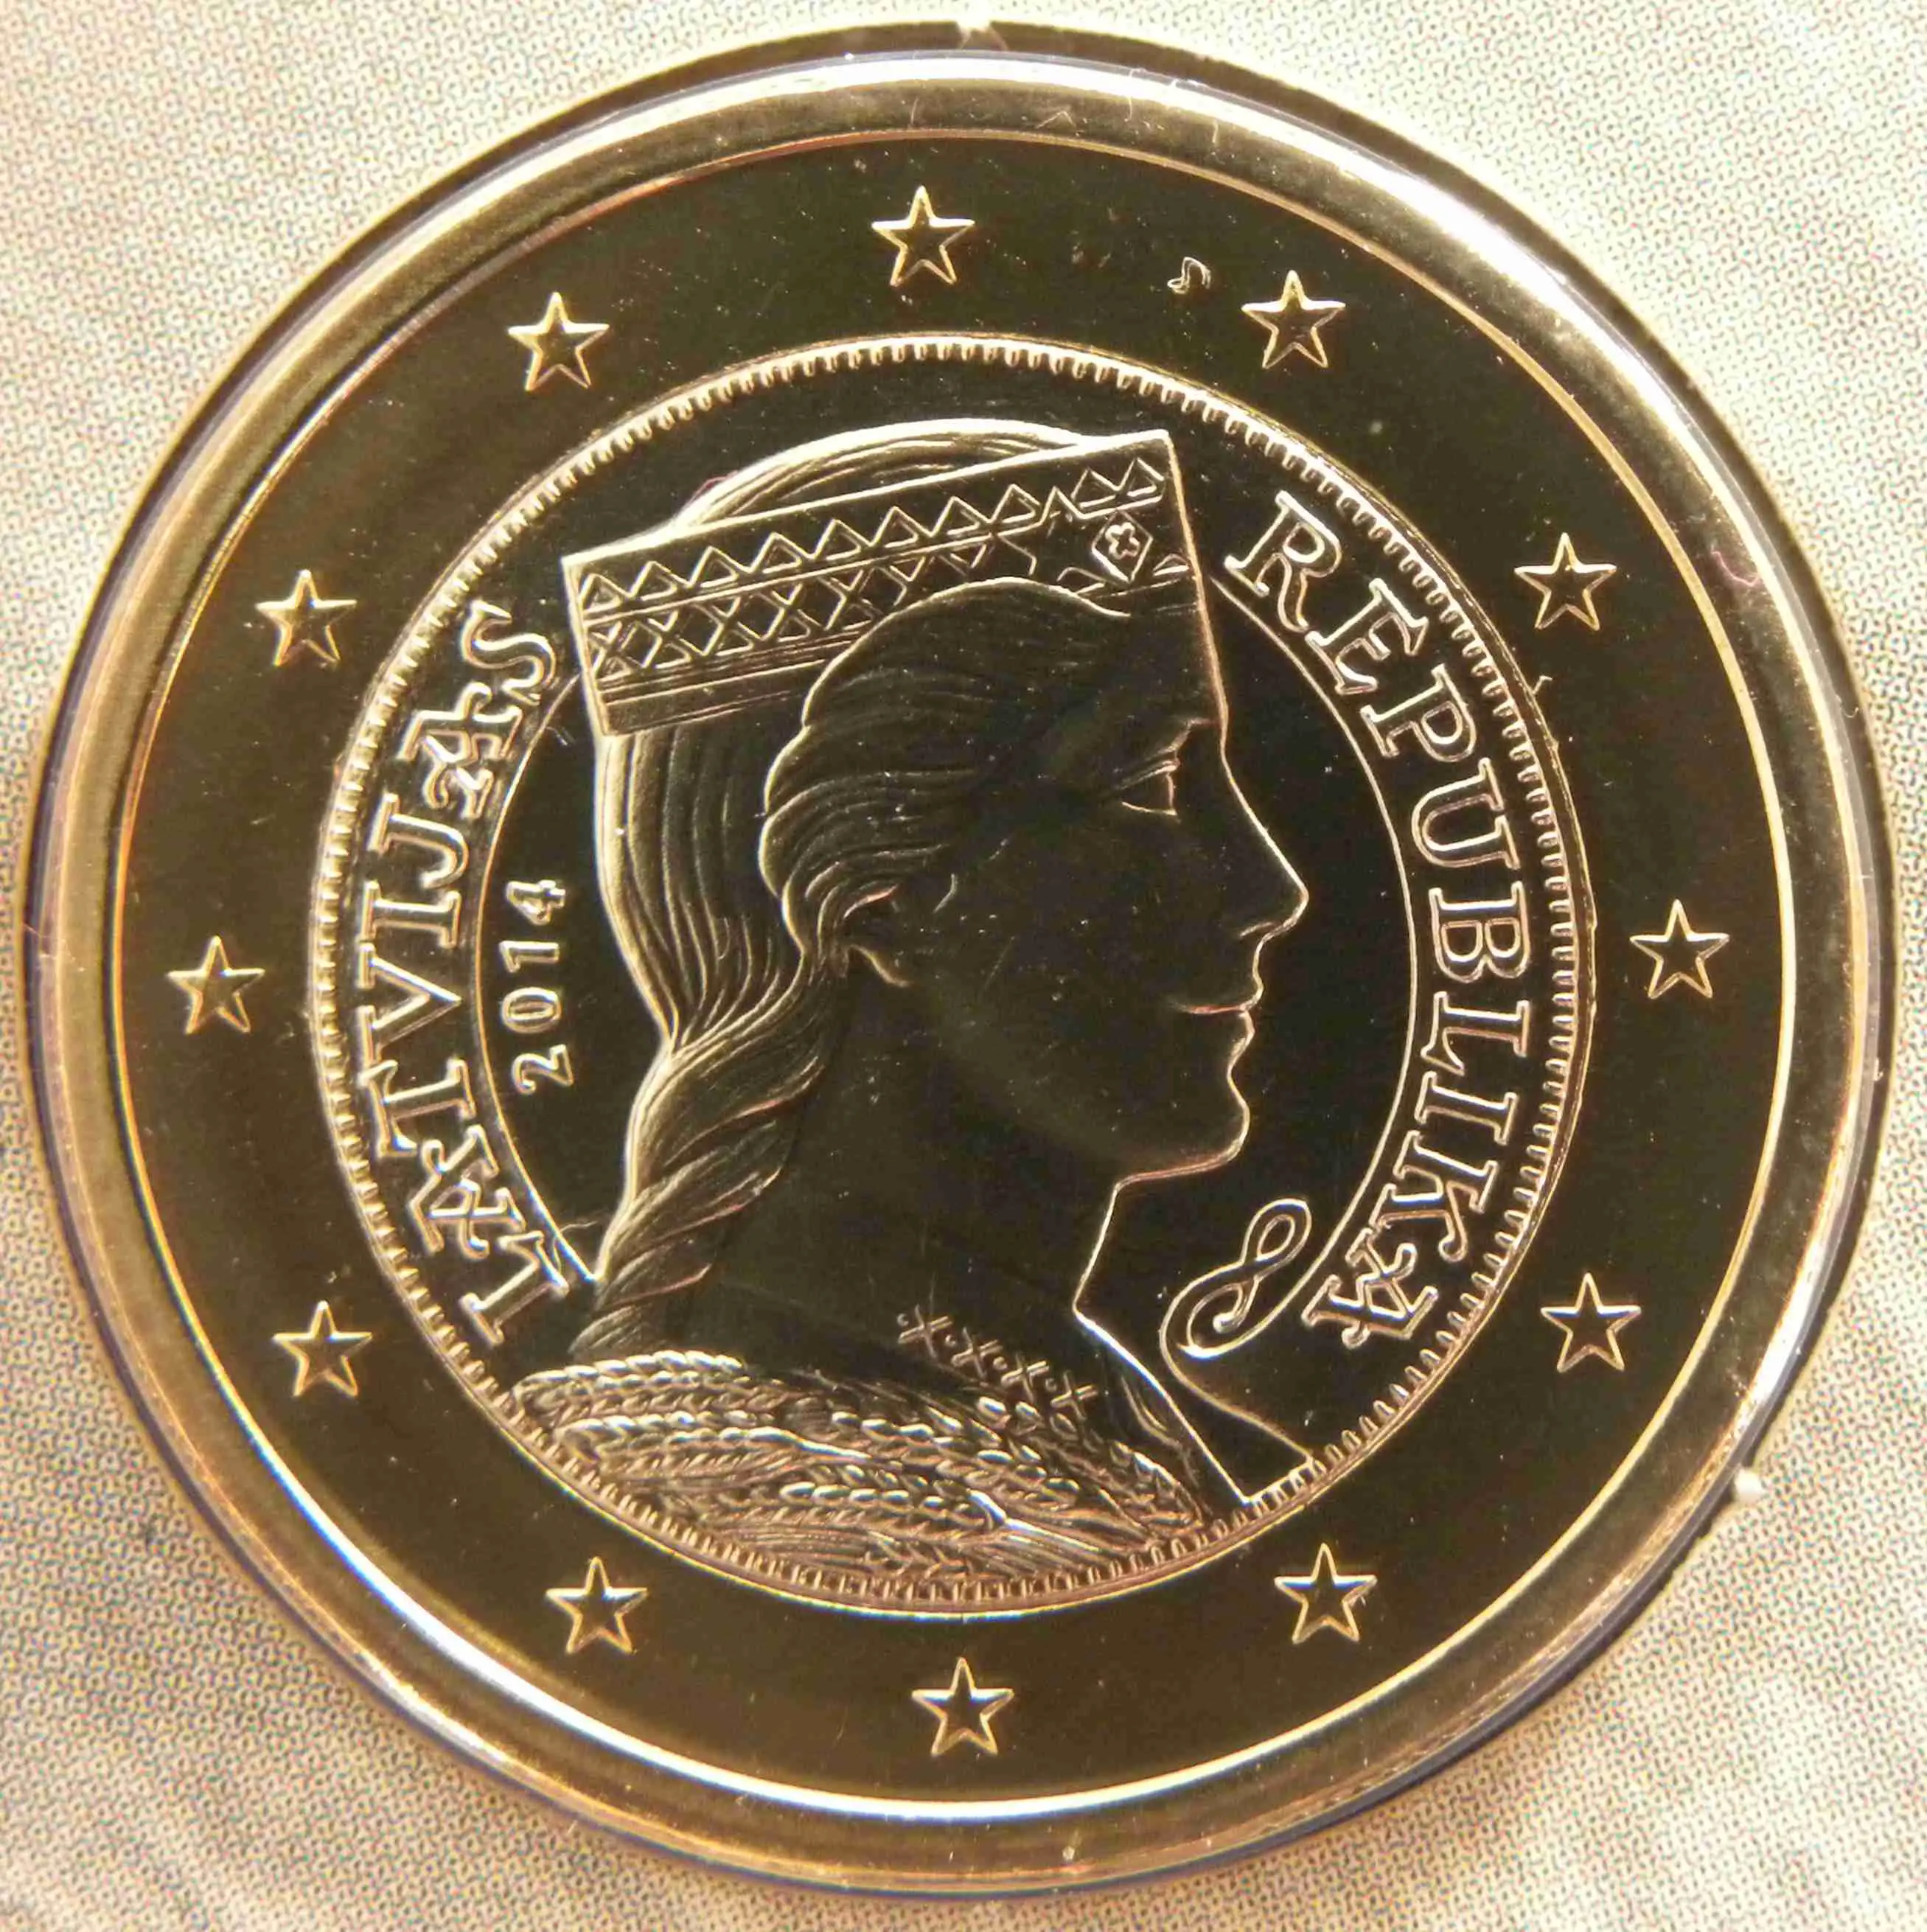 Lettonie Monnaies Euro UNC 2014 ᐅ Valeur, tirage et images sur pieces